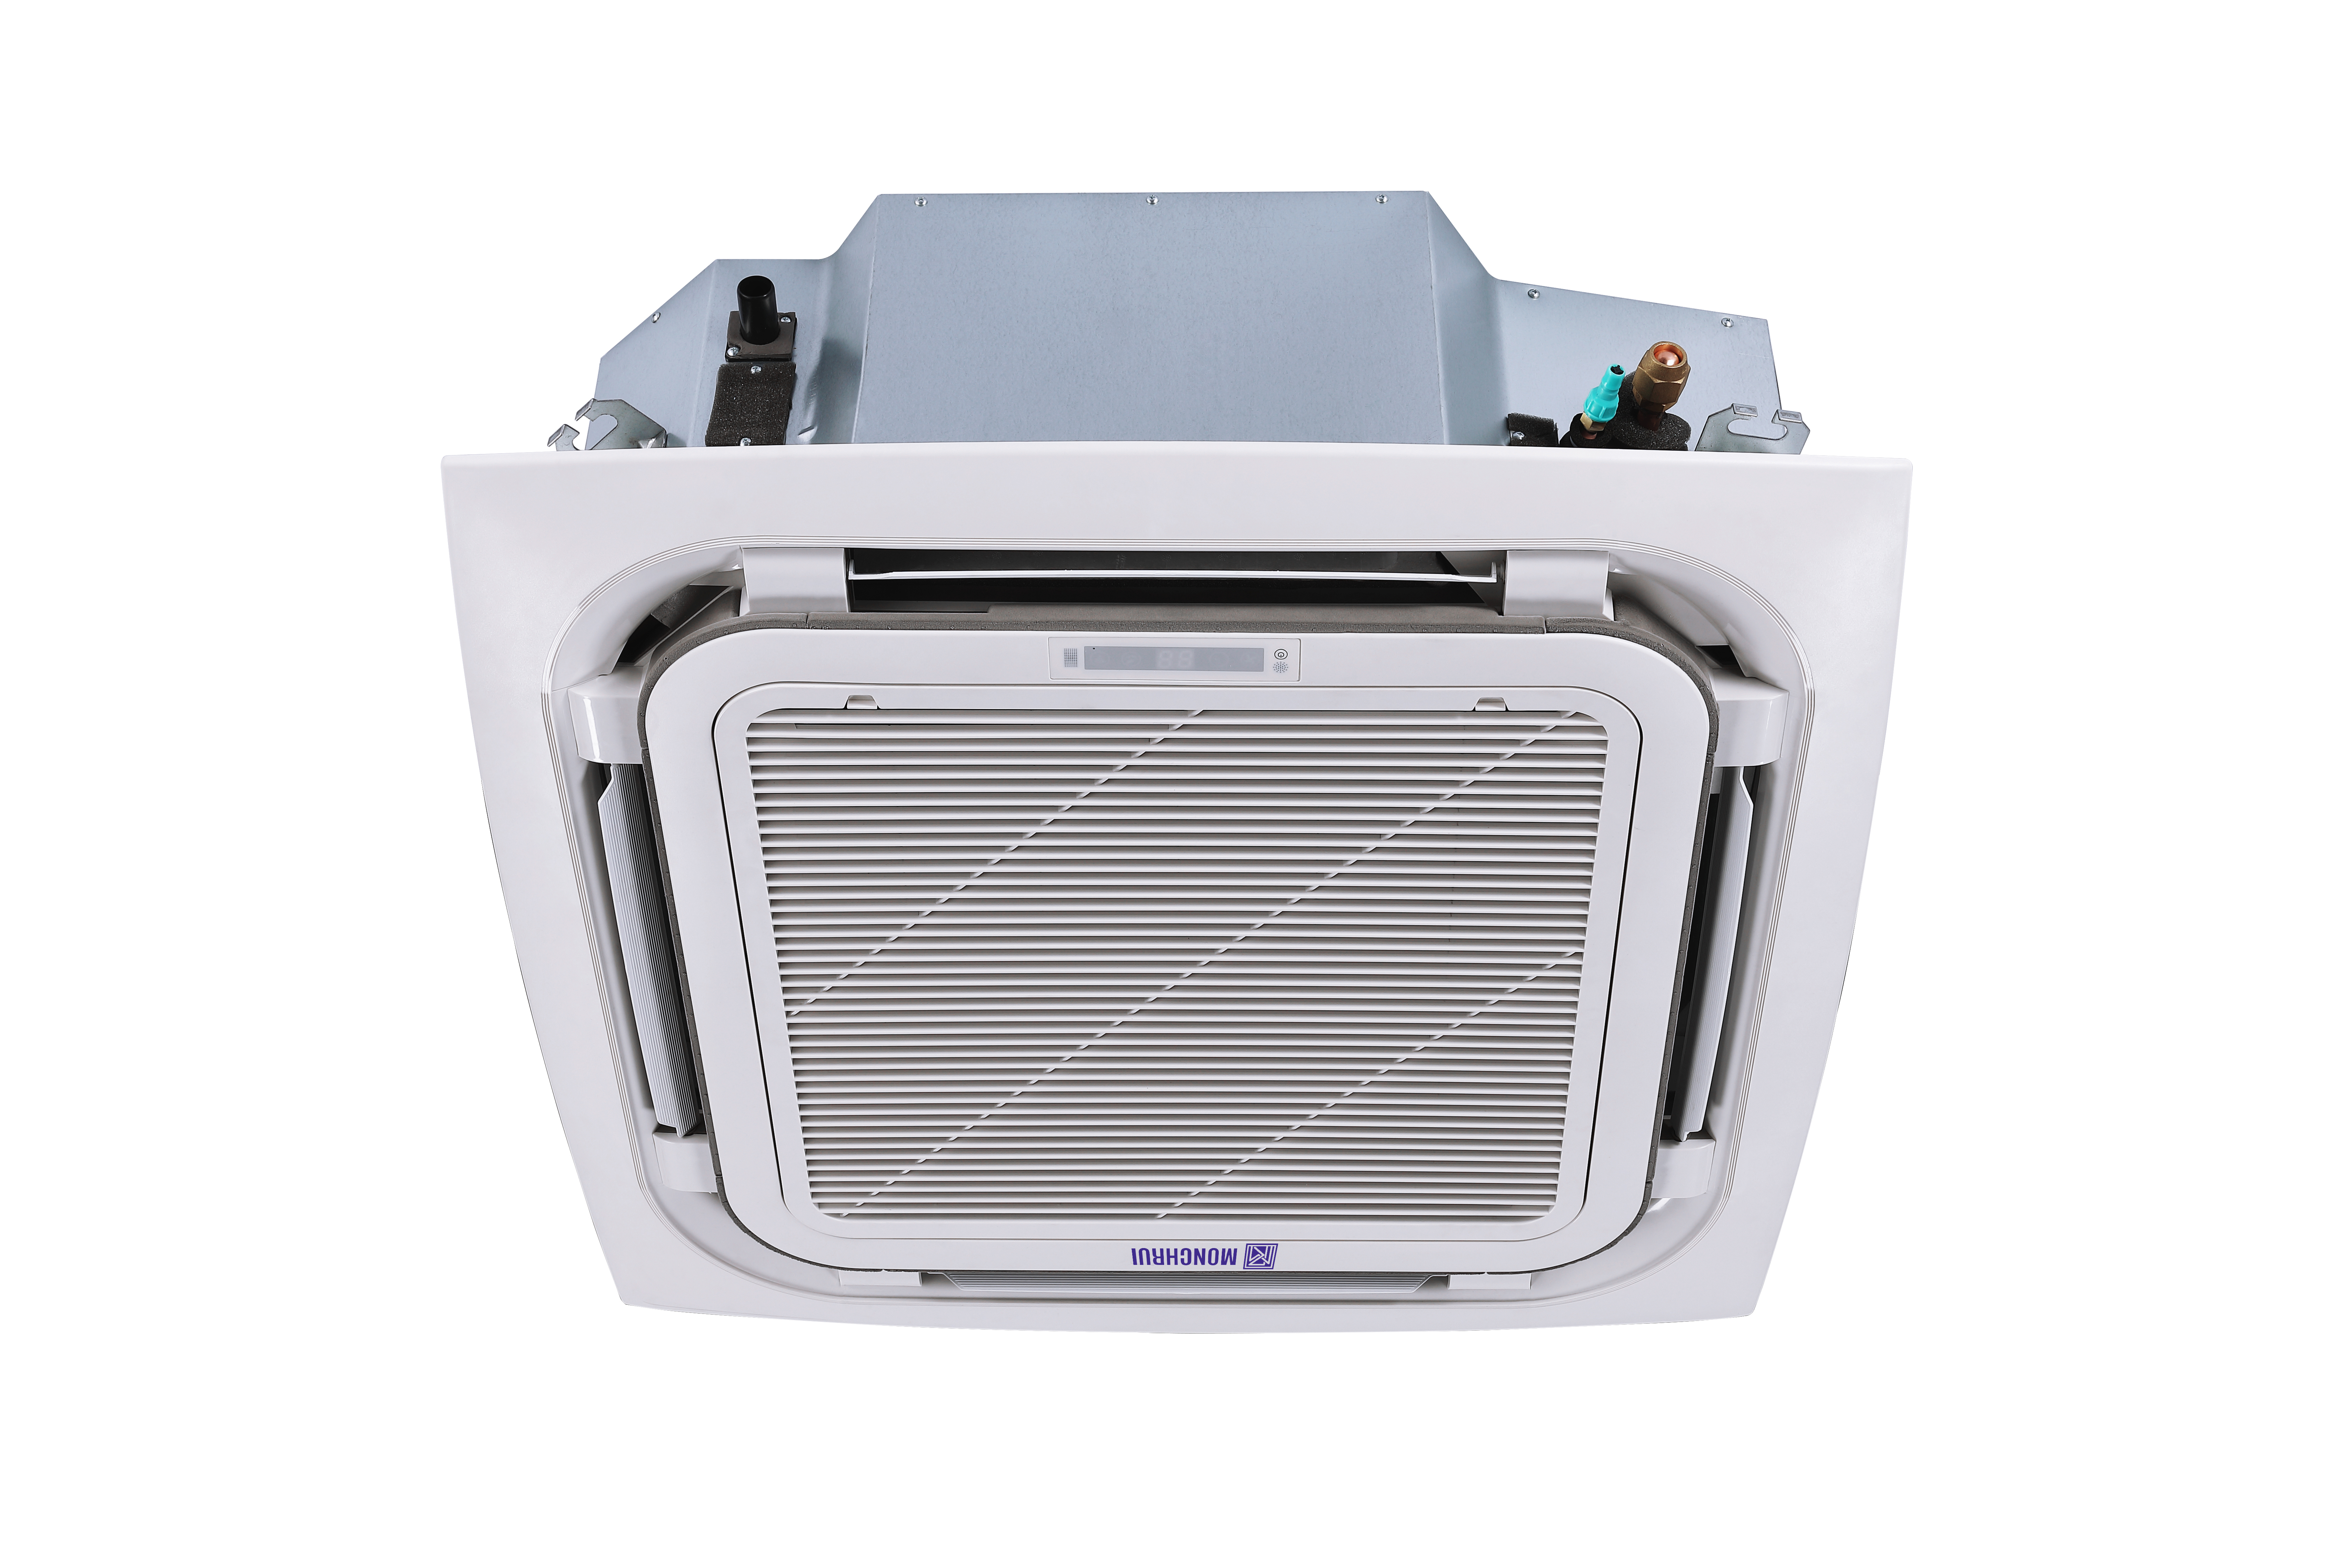 ETL CE TUV Certification Easy To Install 220V 240V 36000btu Residential Ceiling Mounted Split Air Conditioner Cassette unit